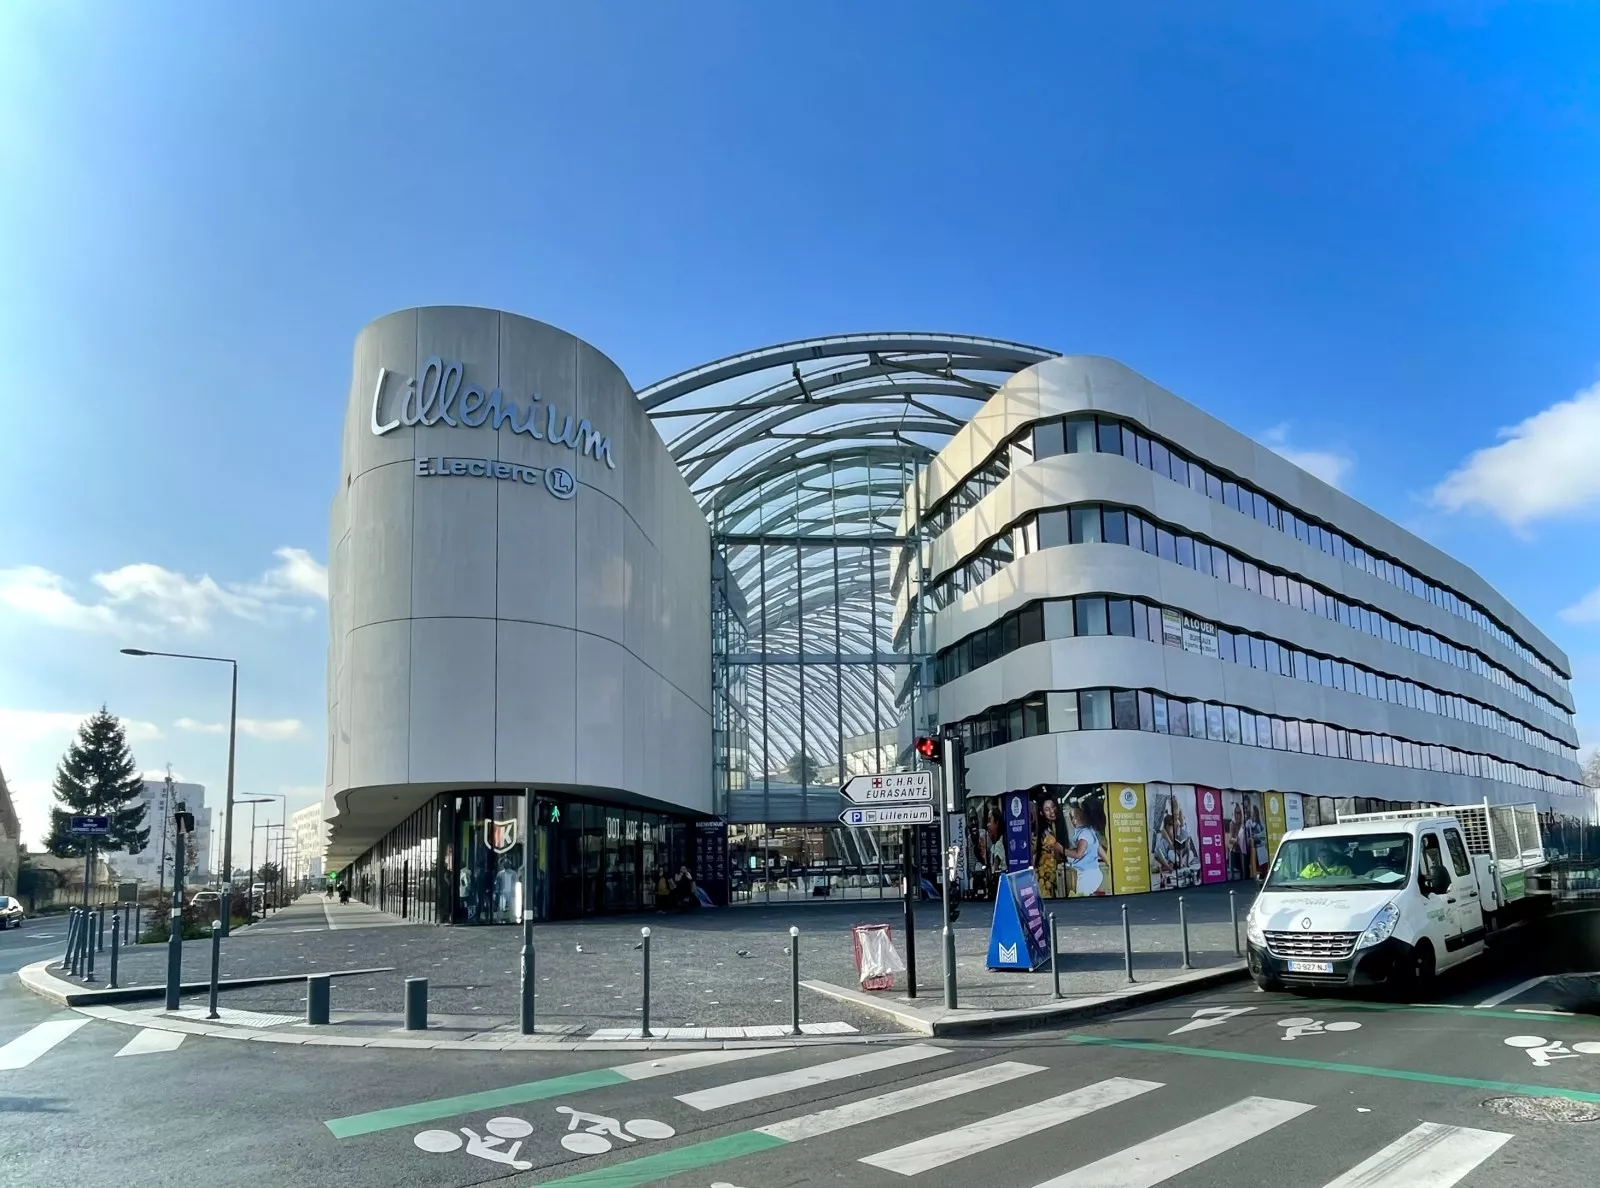 Le centre commercial Lillenium à Lille vu de l'extérieur